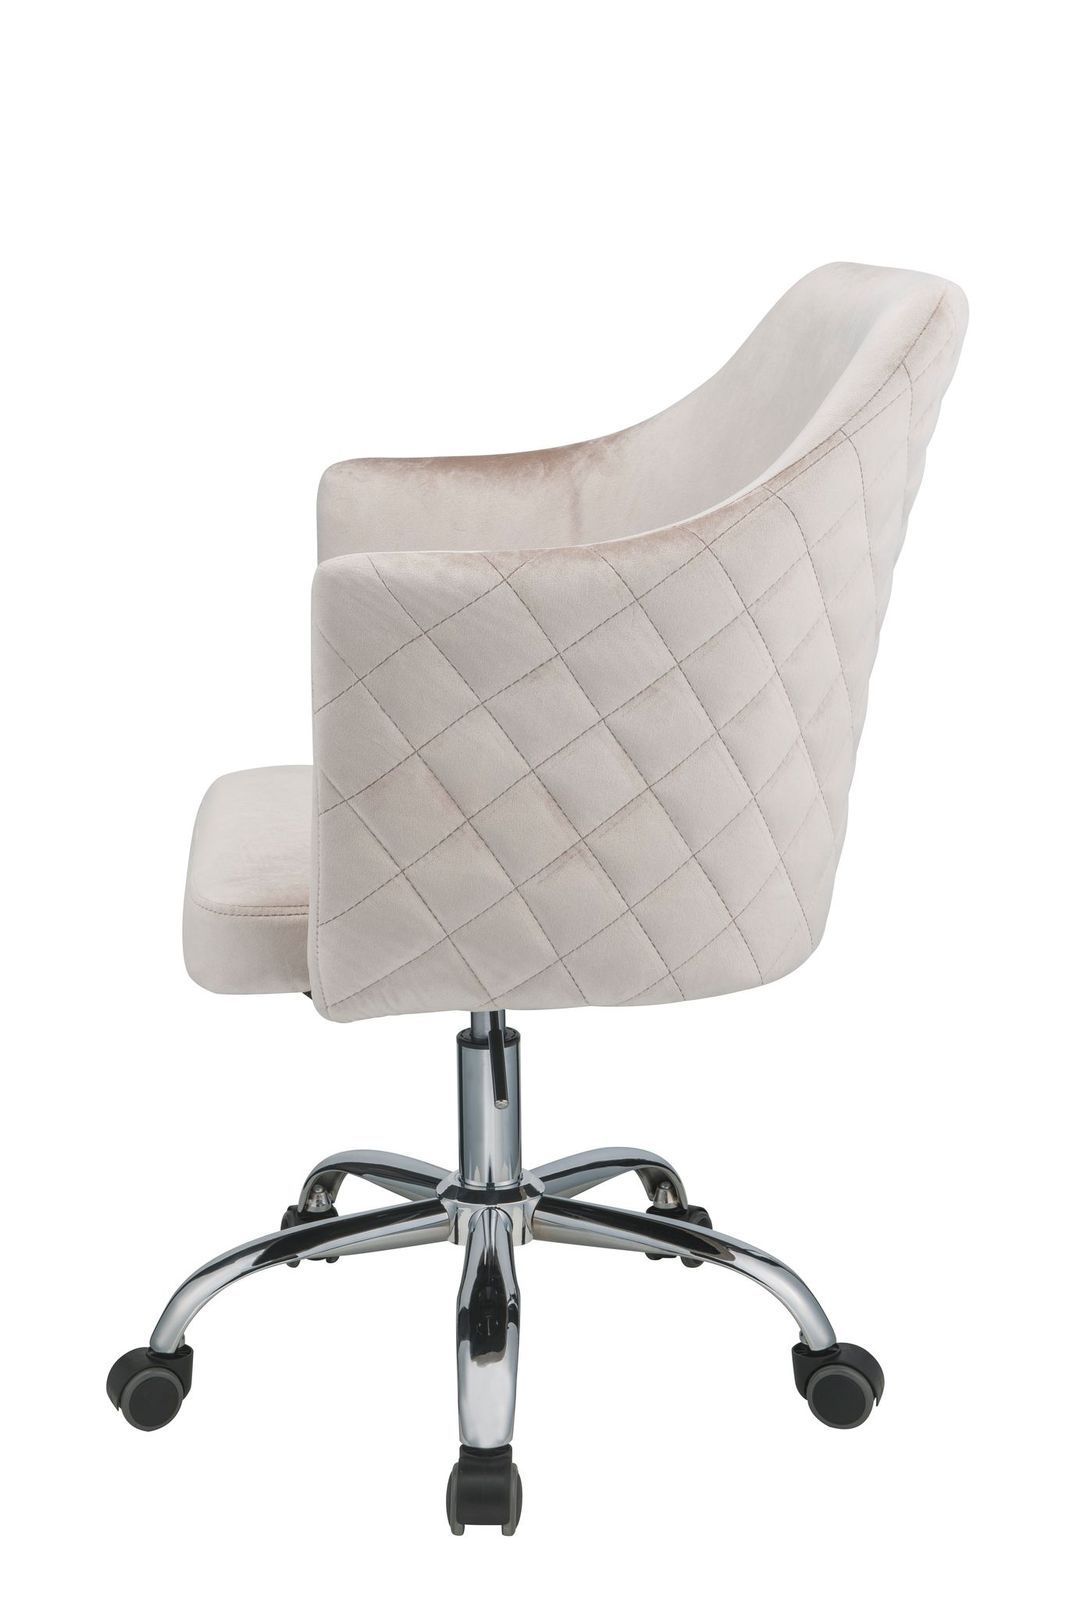 ACME Cosgair Office Chair in Champagne Velvet & Chrome